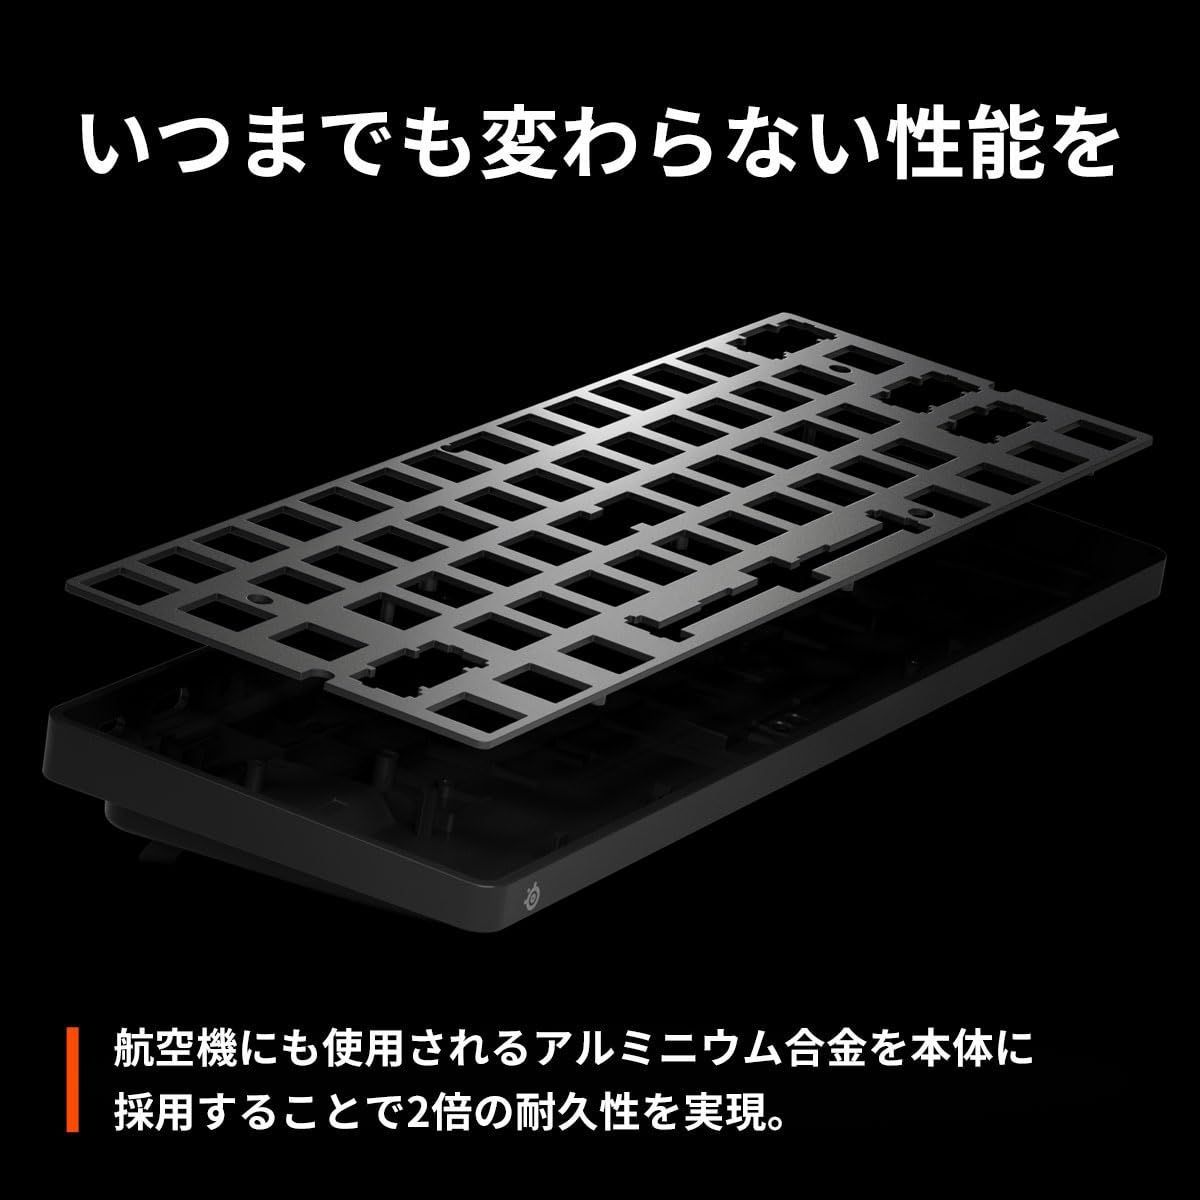 最高級APEX pro mini jp【日本語配列】 キーボード